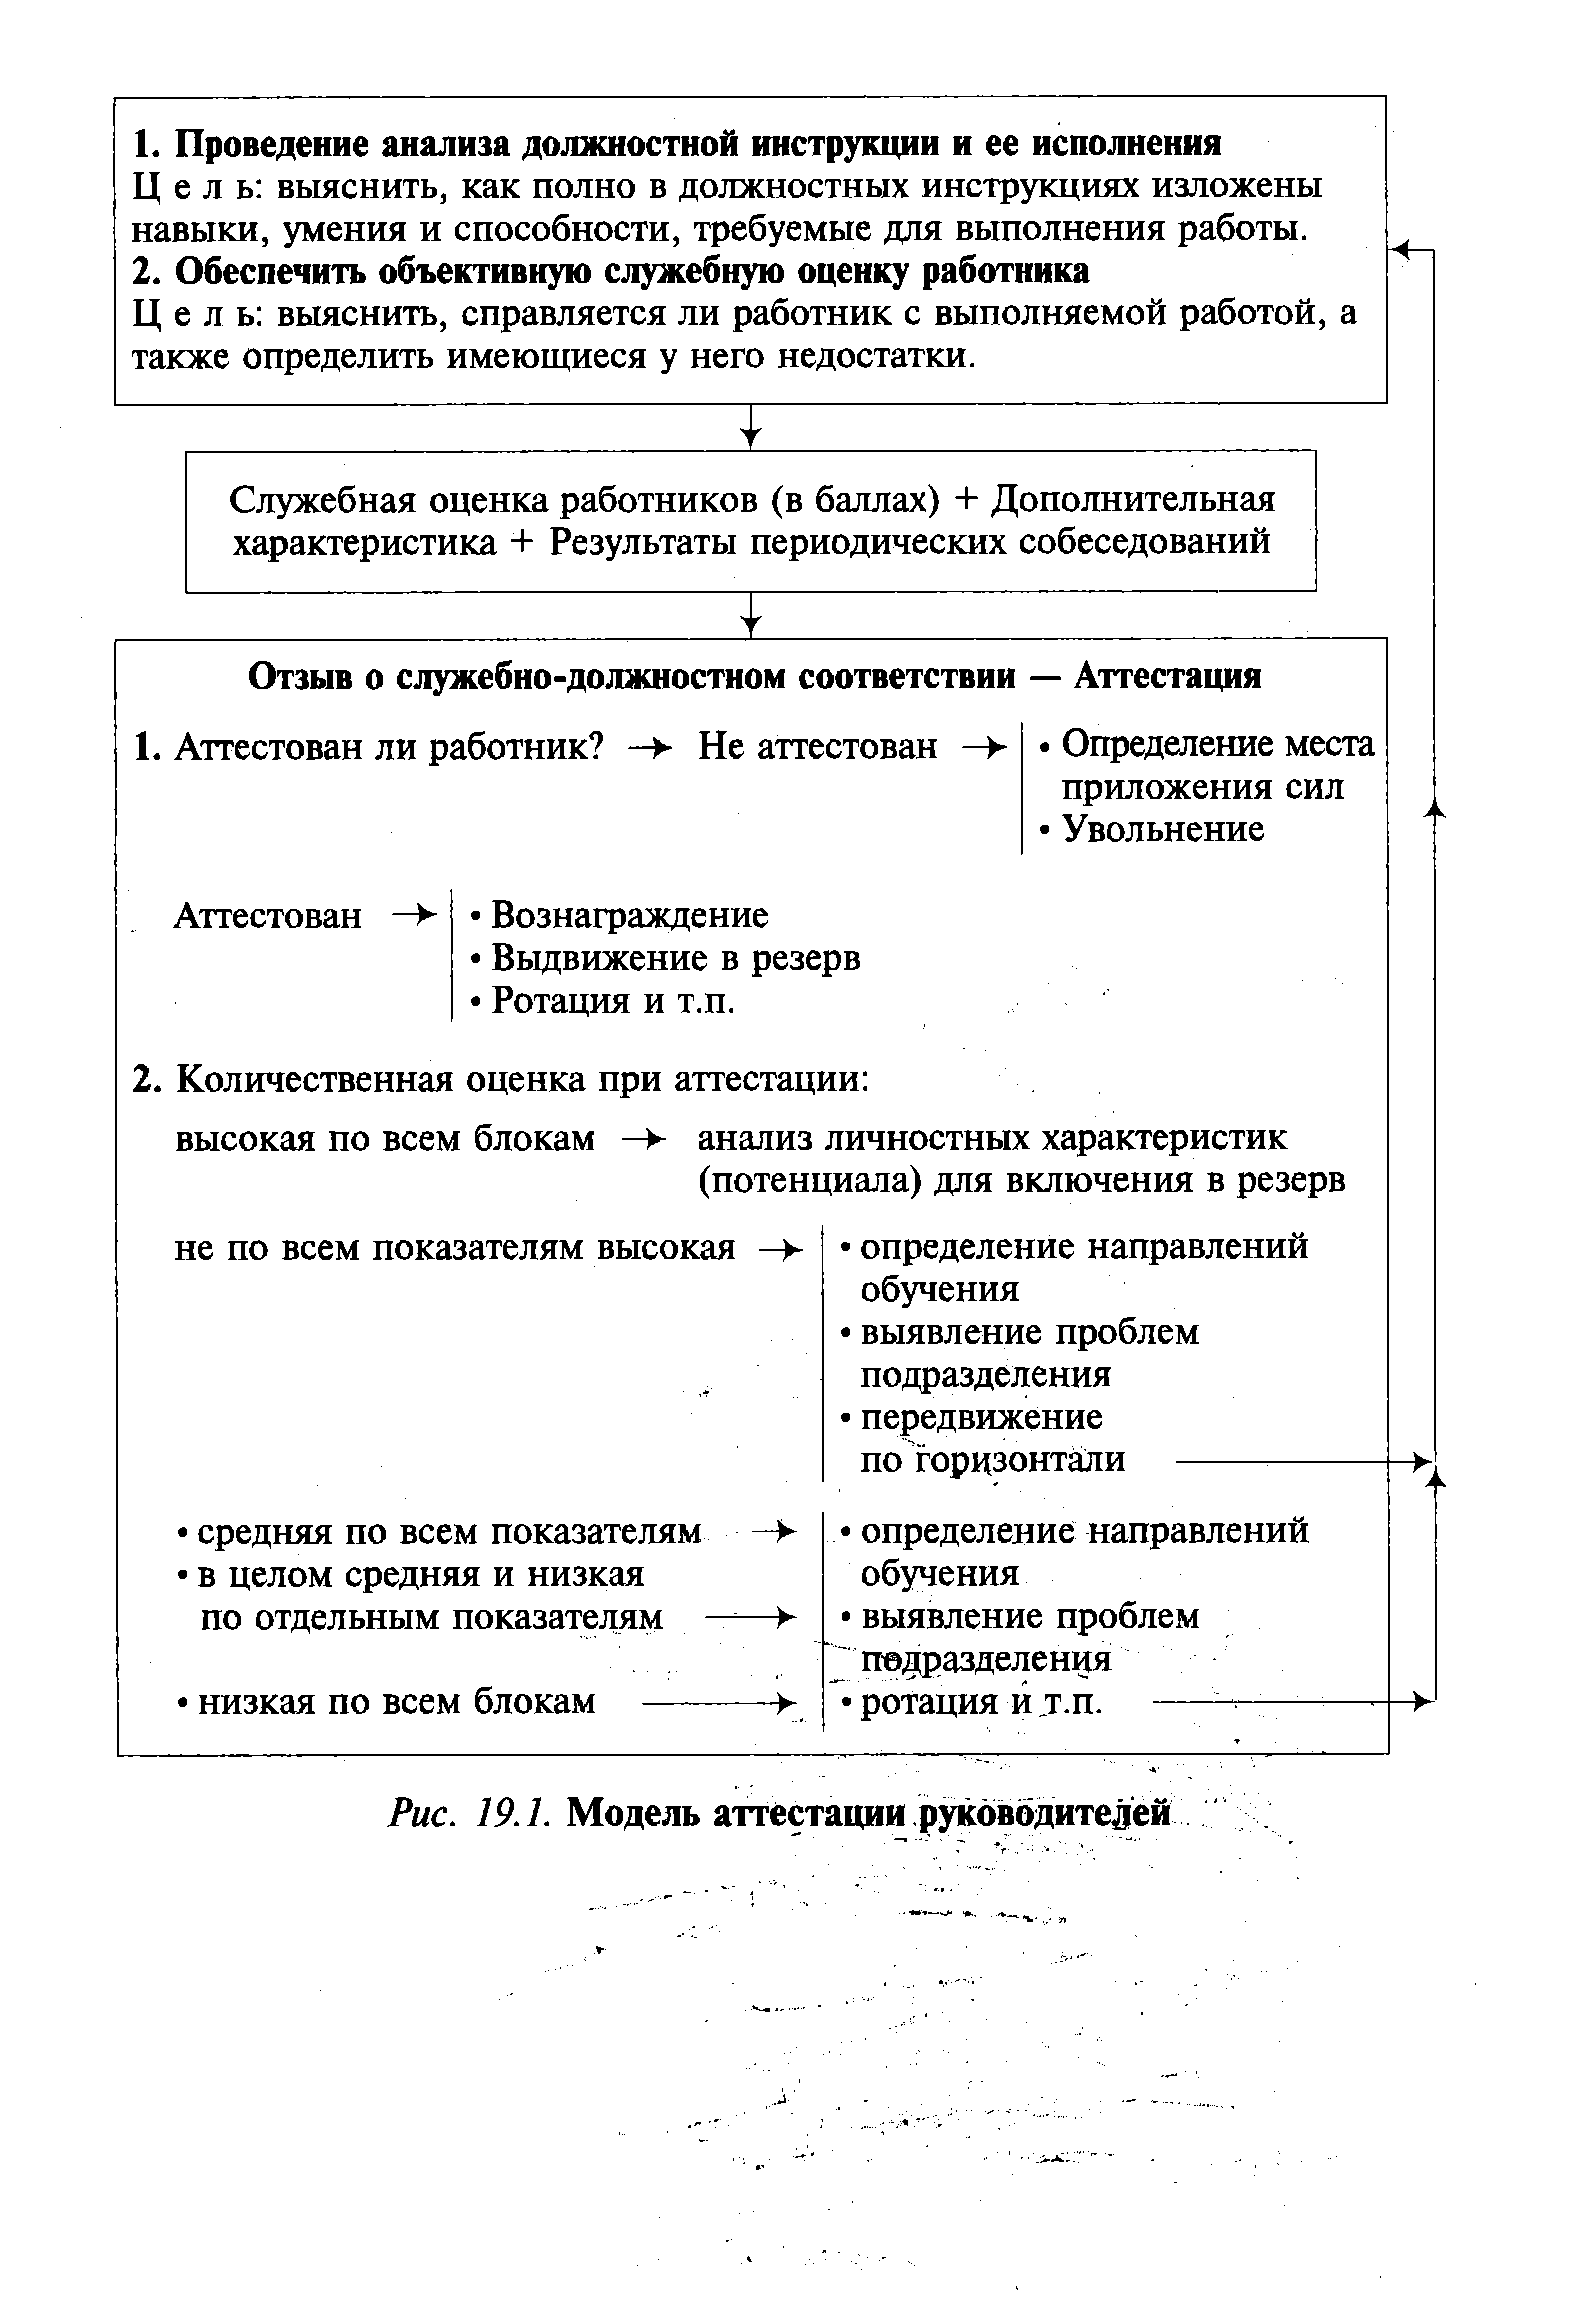 Рис. 19.1. Модель аттестации руководителей
